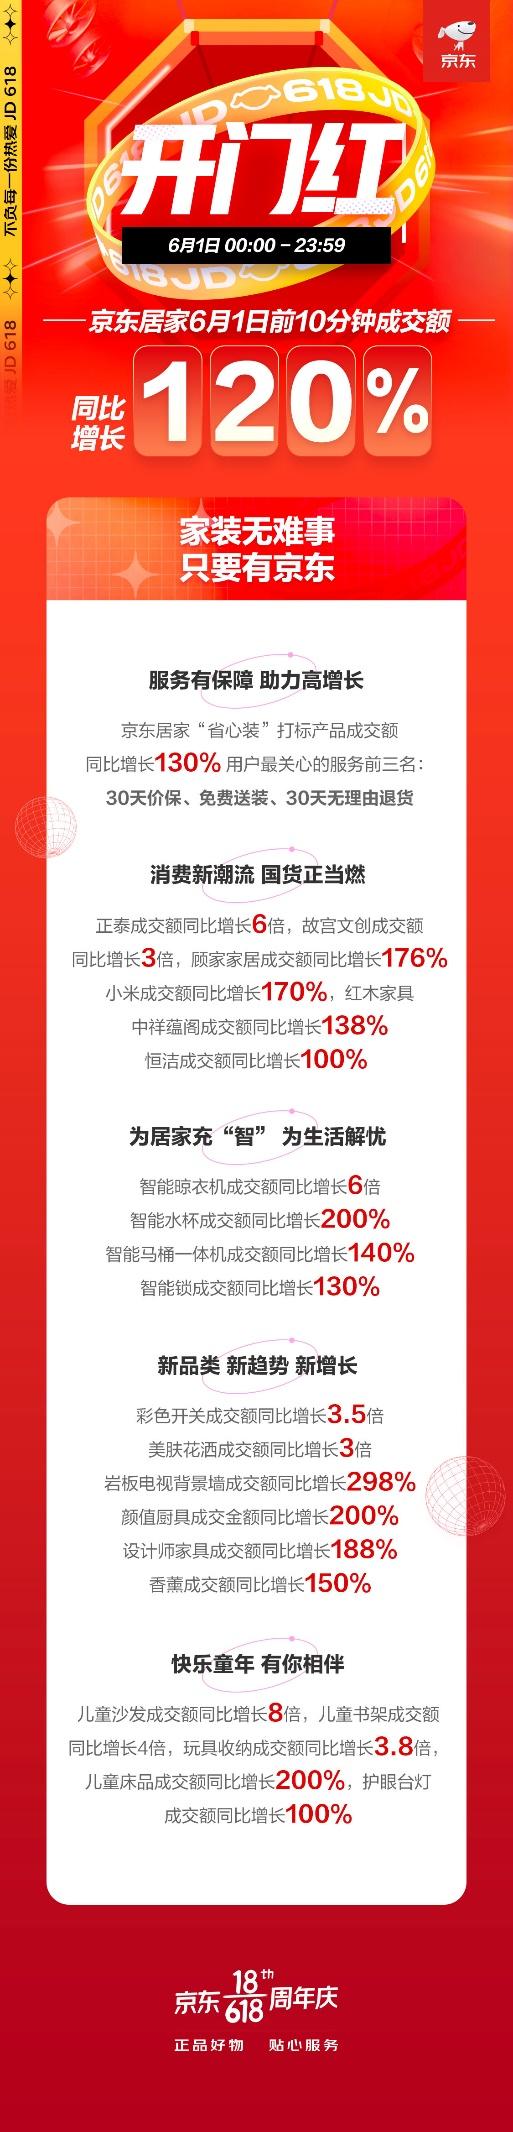 京东618居家服务赢获信赖 “省心装”打标产品成交额同比增长130%